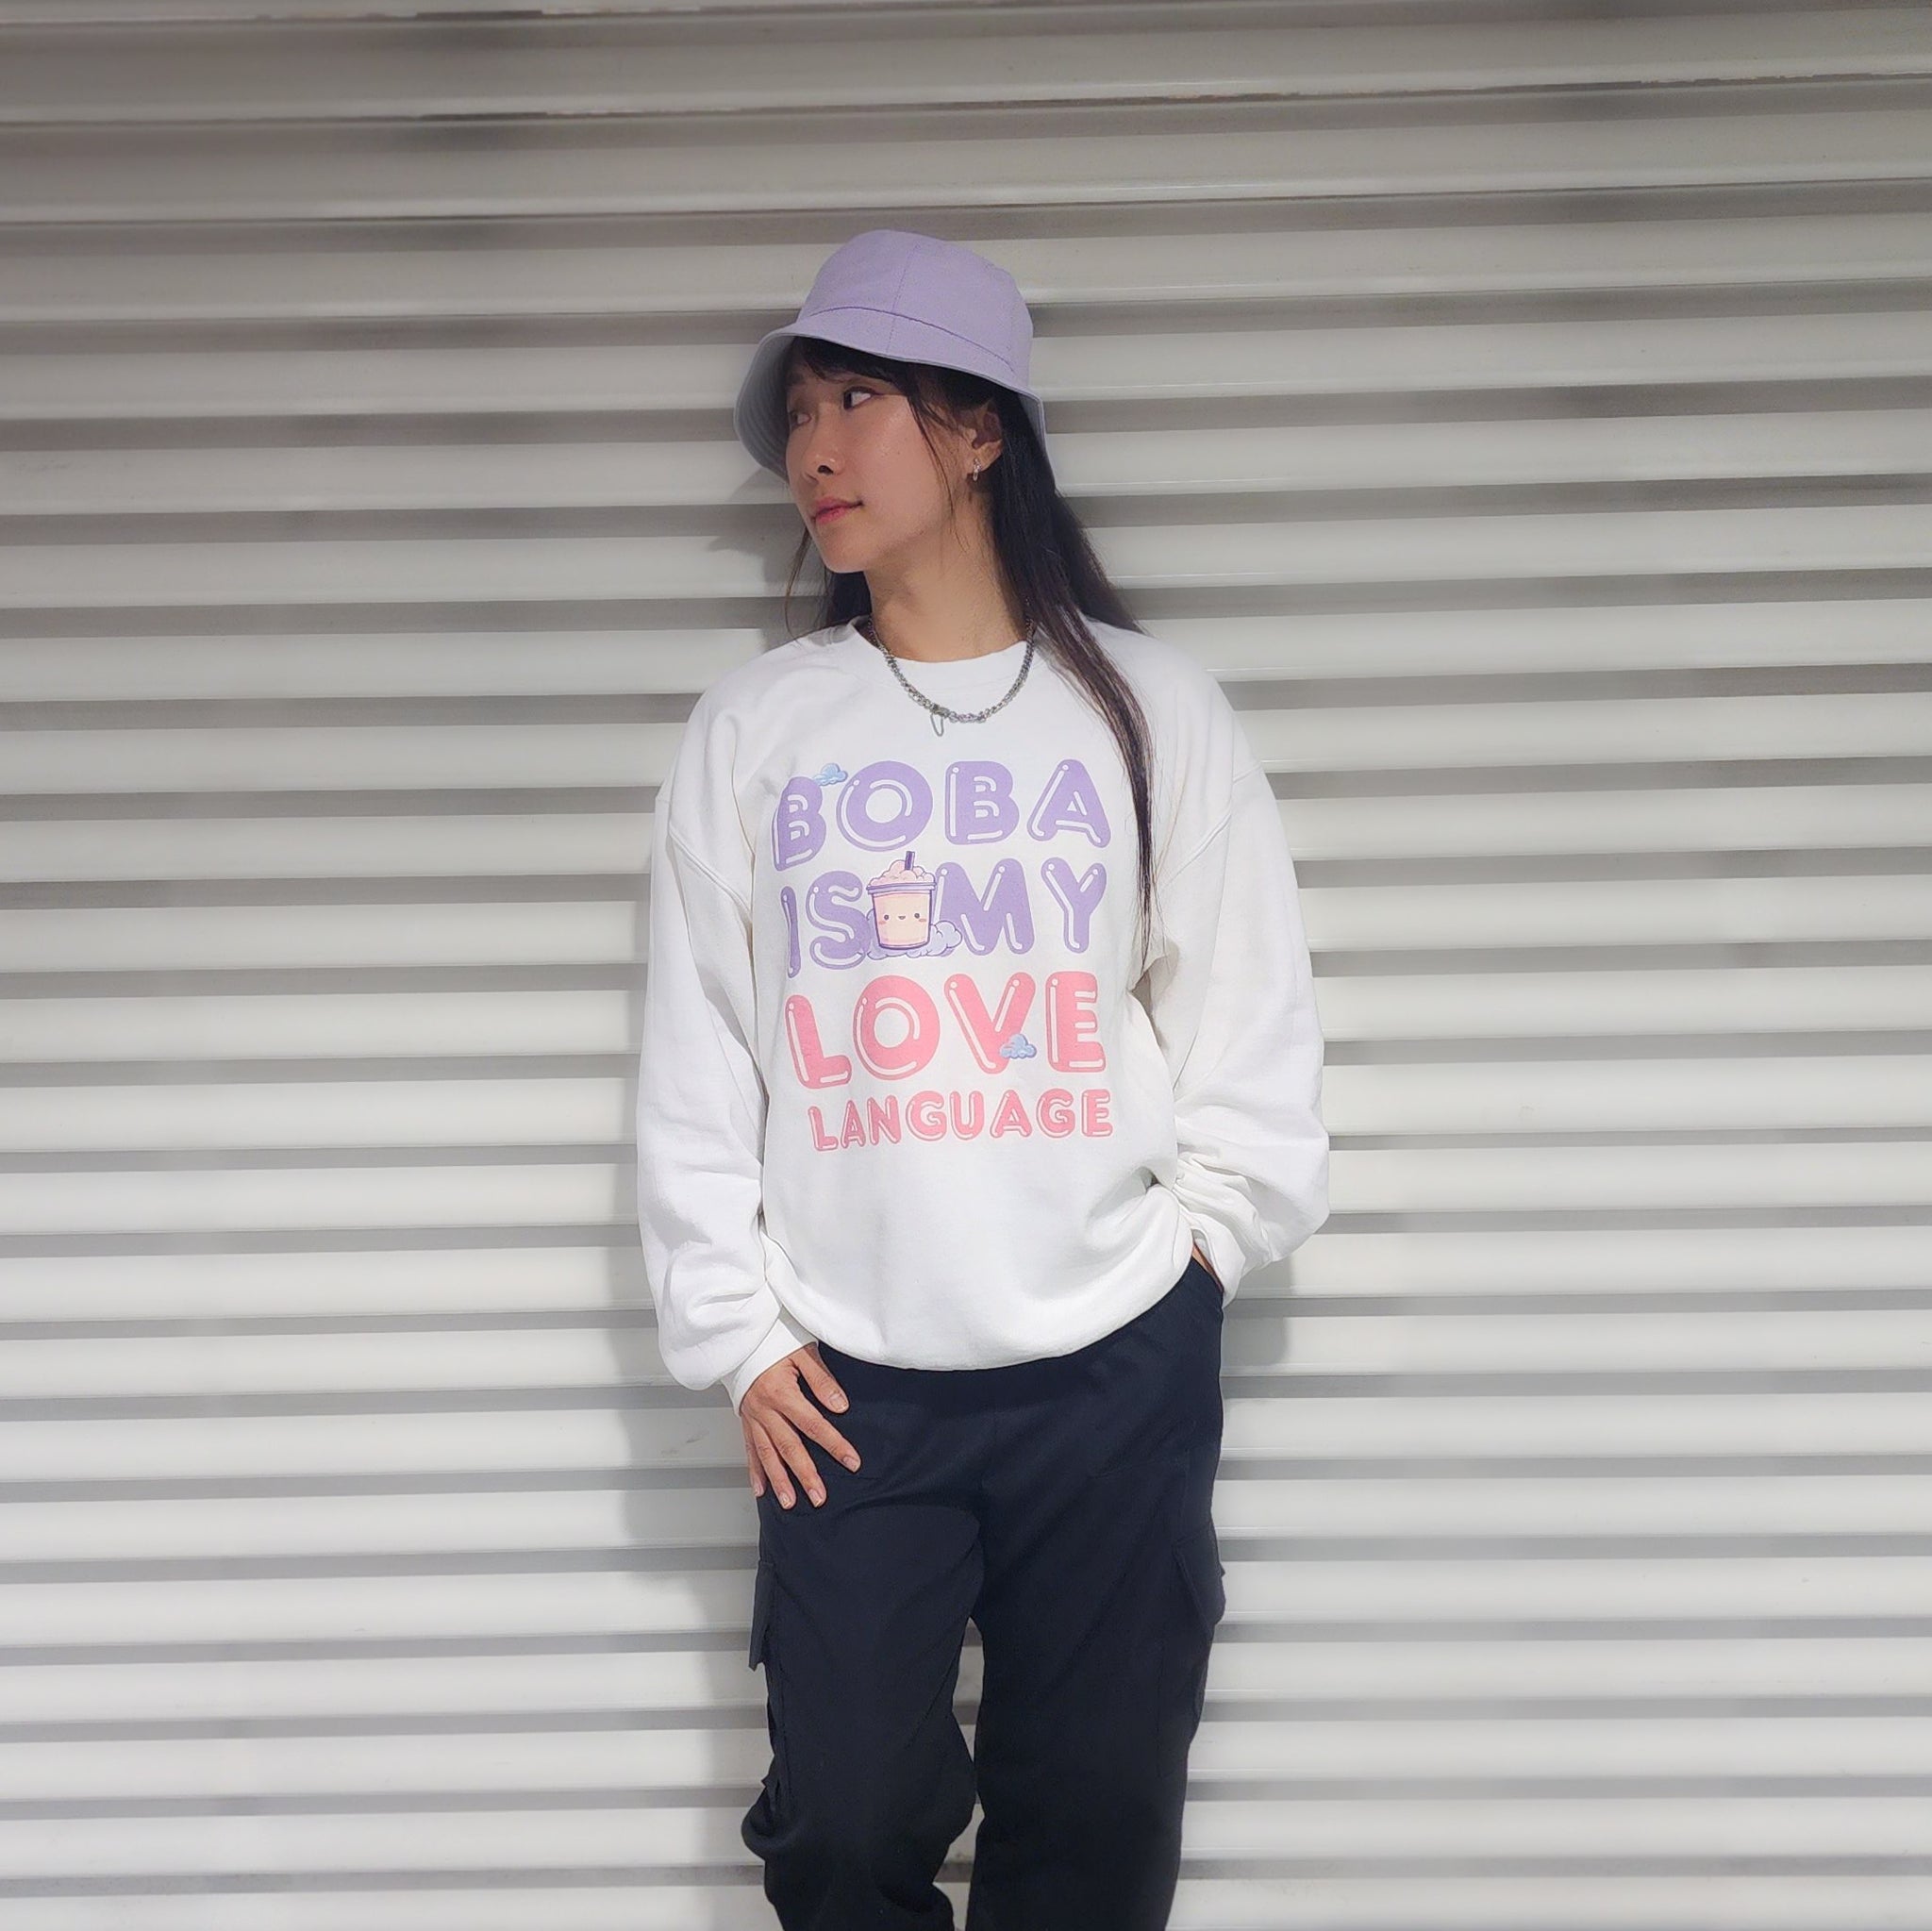 Boba Love Language Sweatshirt Lilac Words - White, Pink, Black